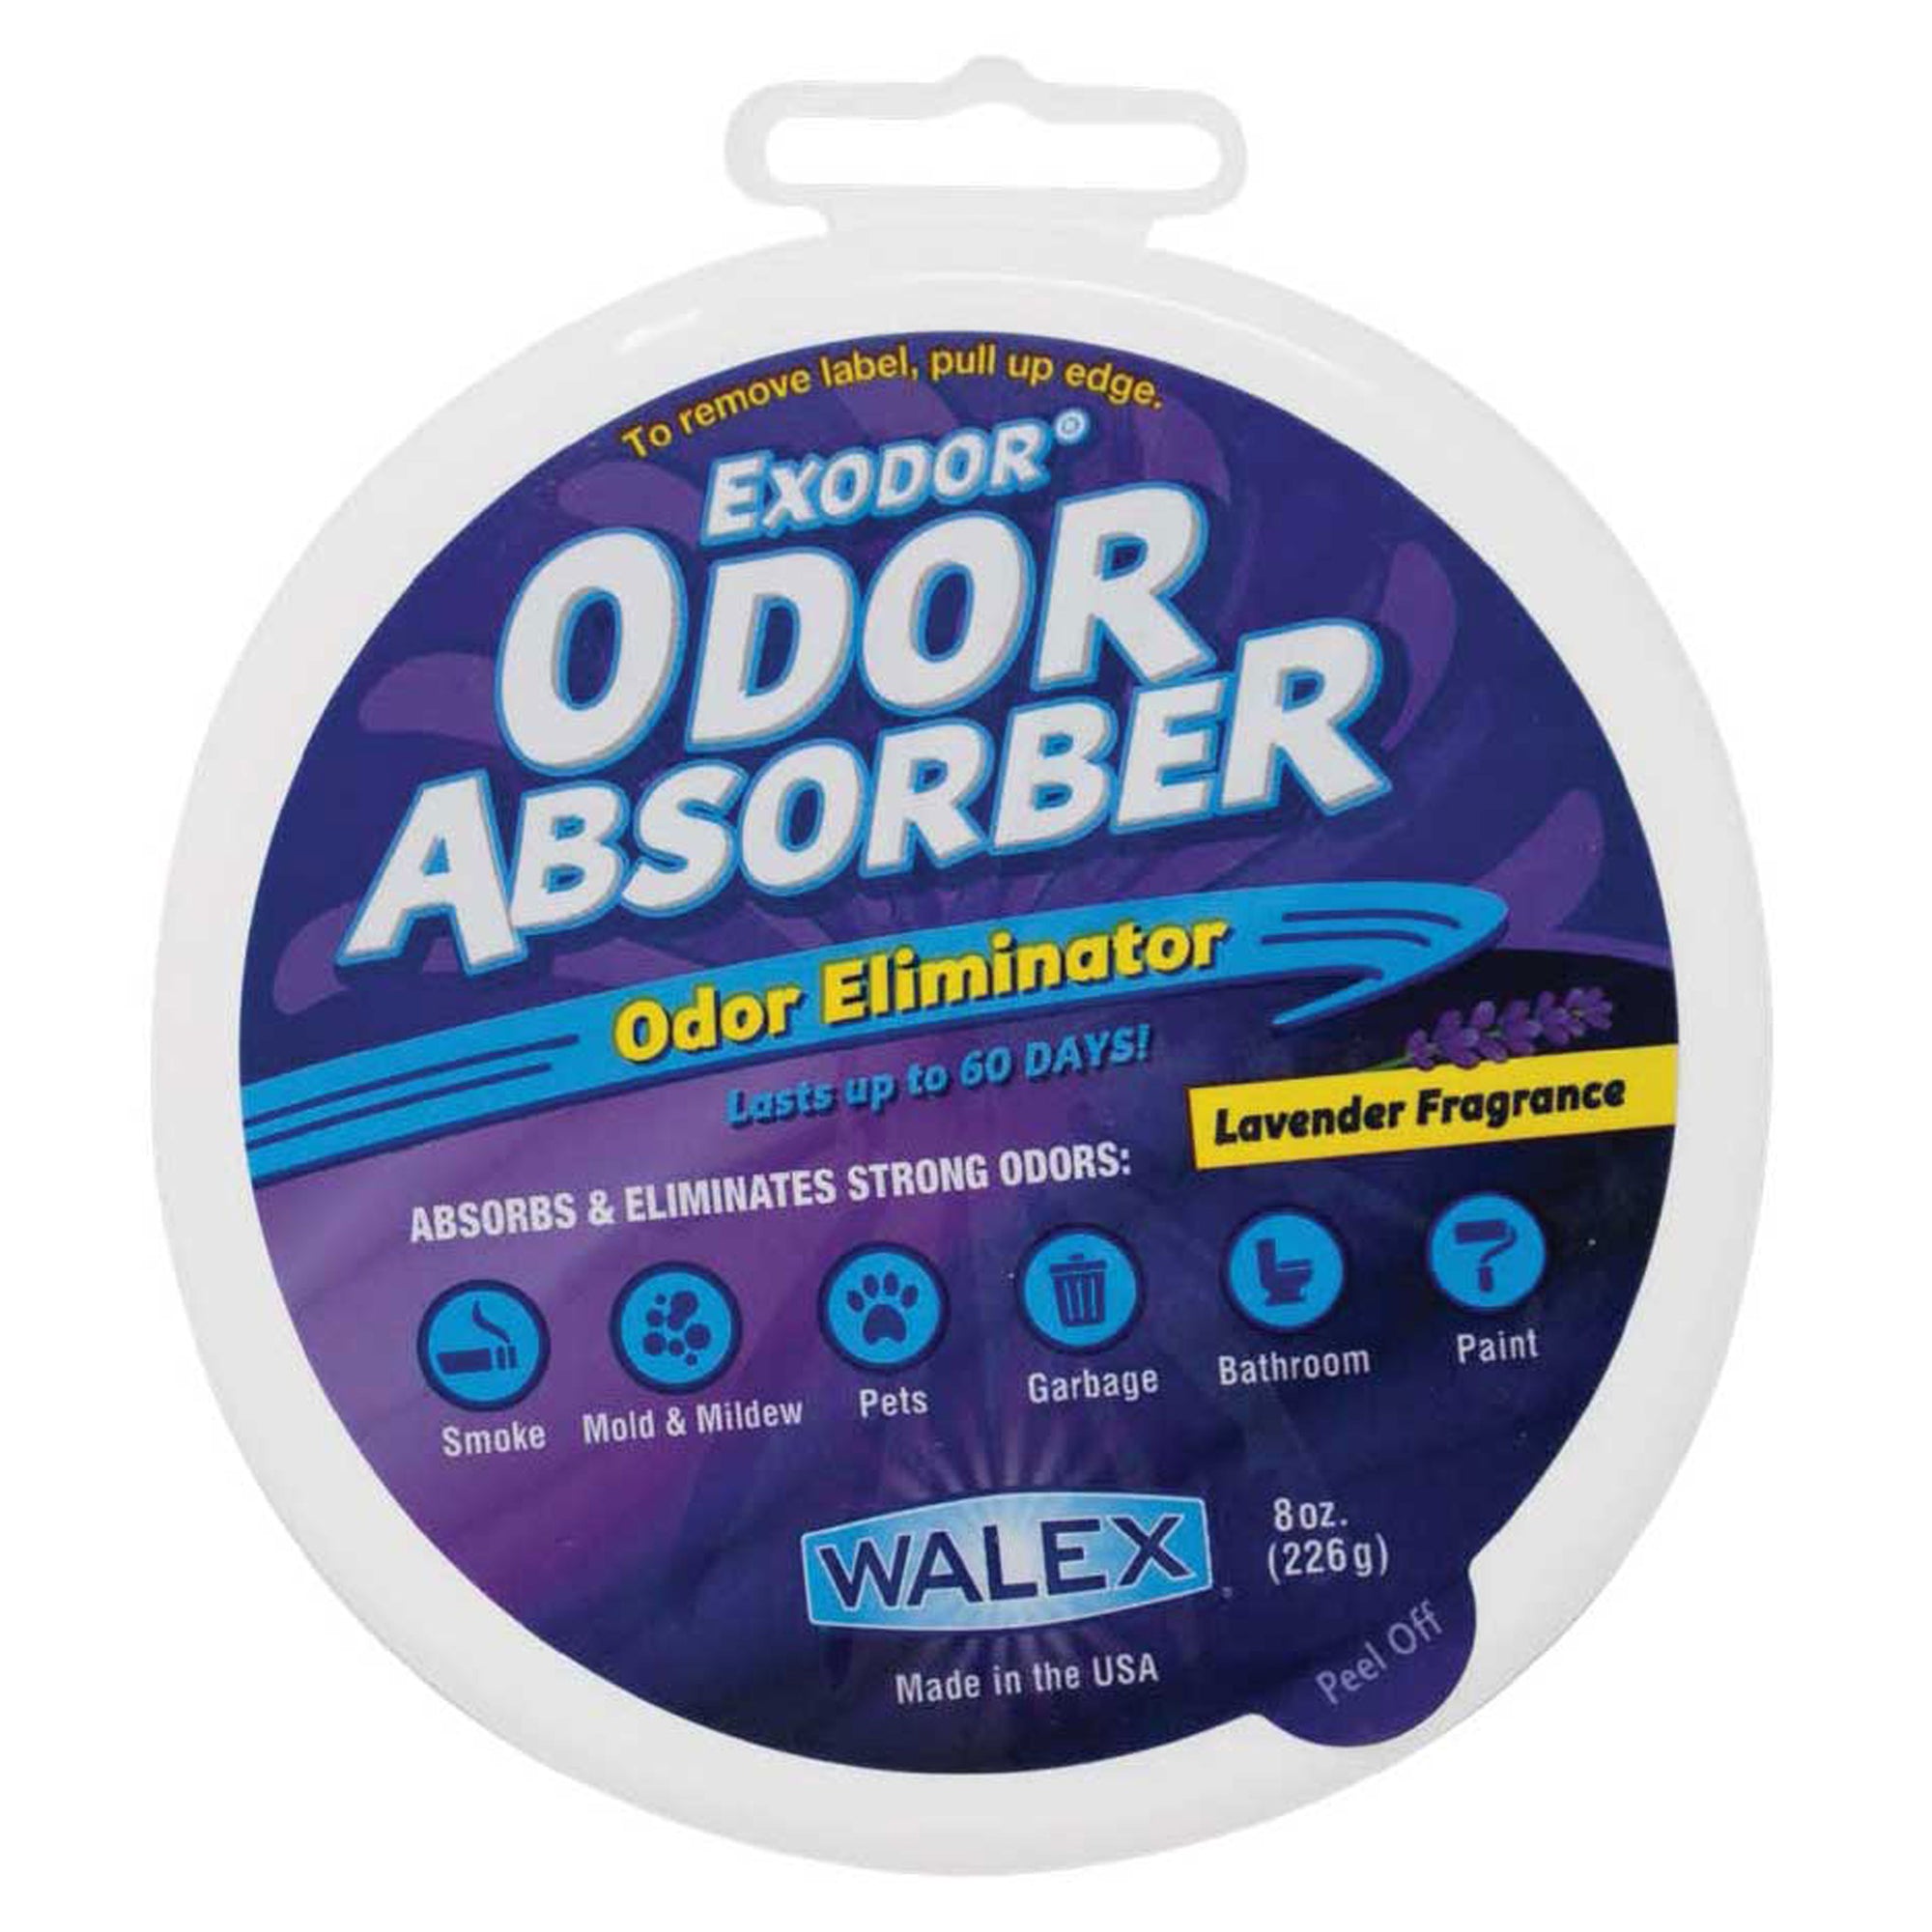 Walex ABSORBRET Exodor Odor Absorber - Lavender Scent, 8 oz.